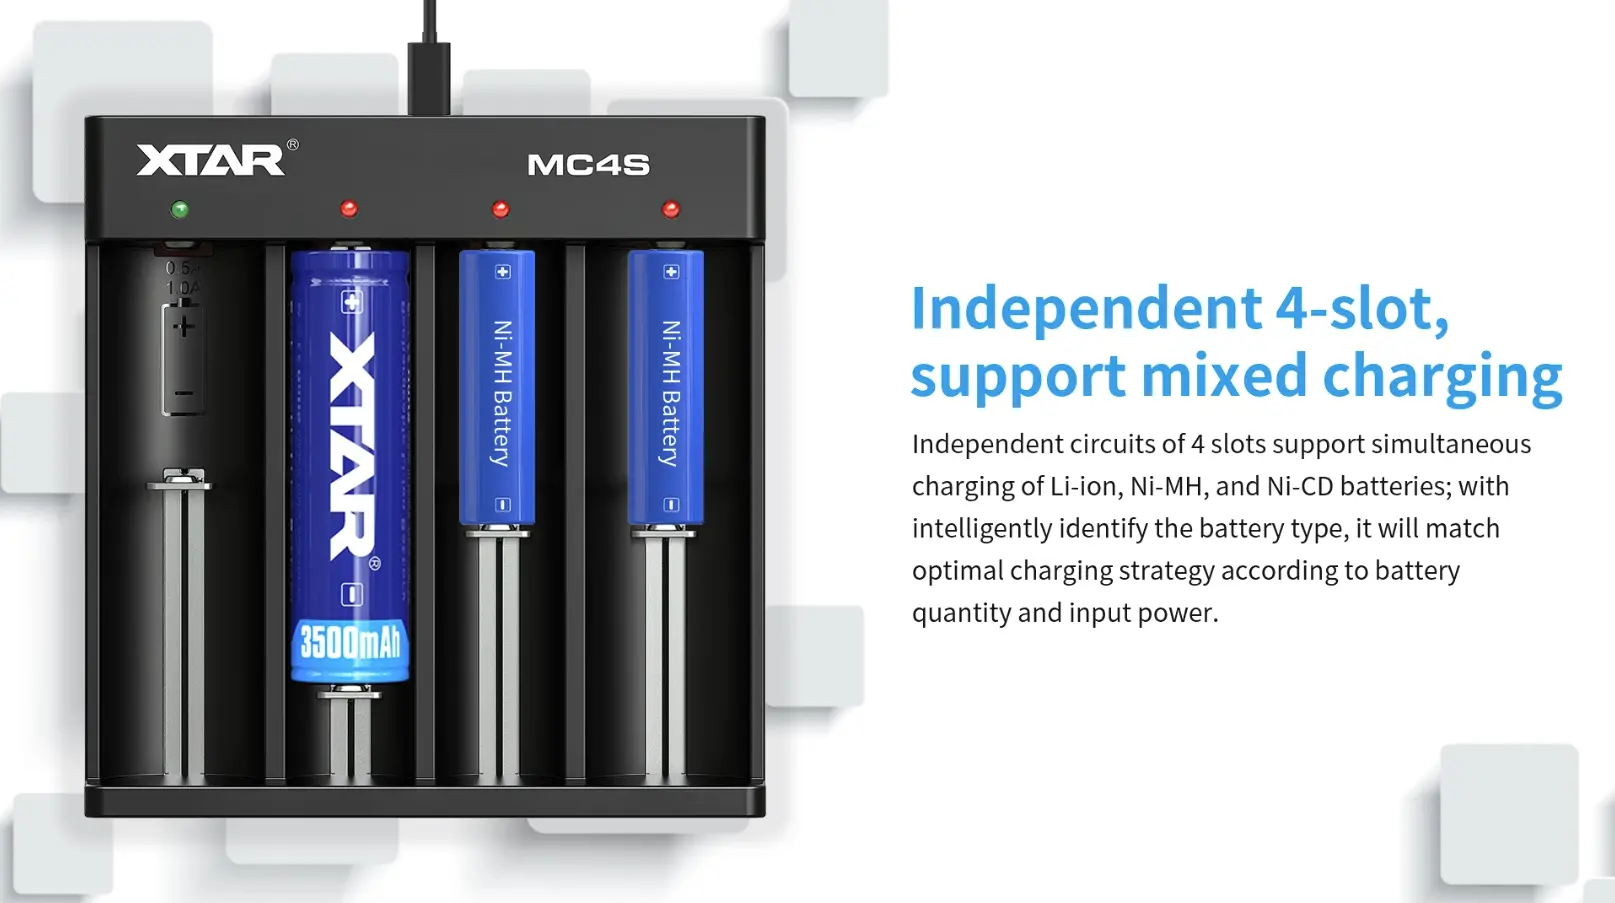 Punjač baterija XTAR MC4S Li-ion/Ni-MH USB